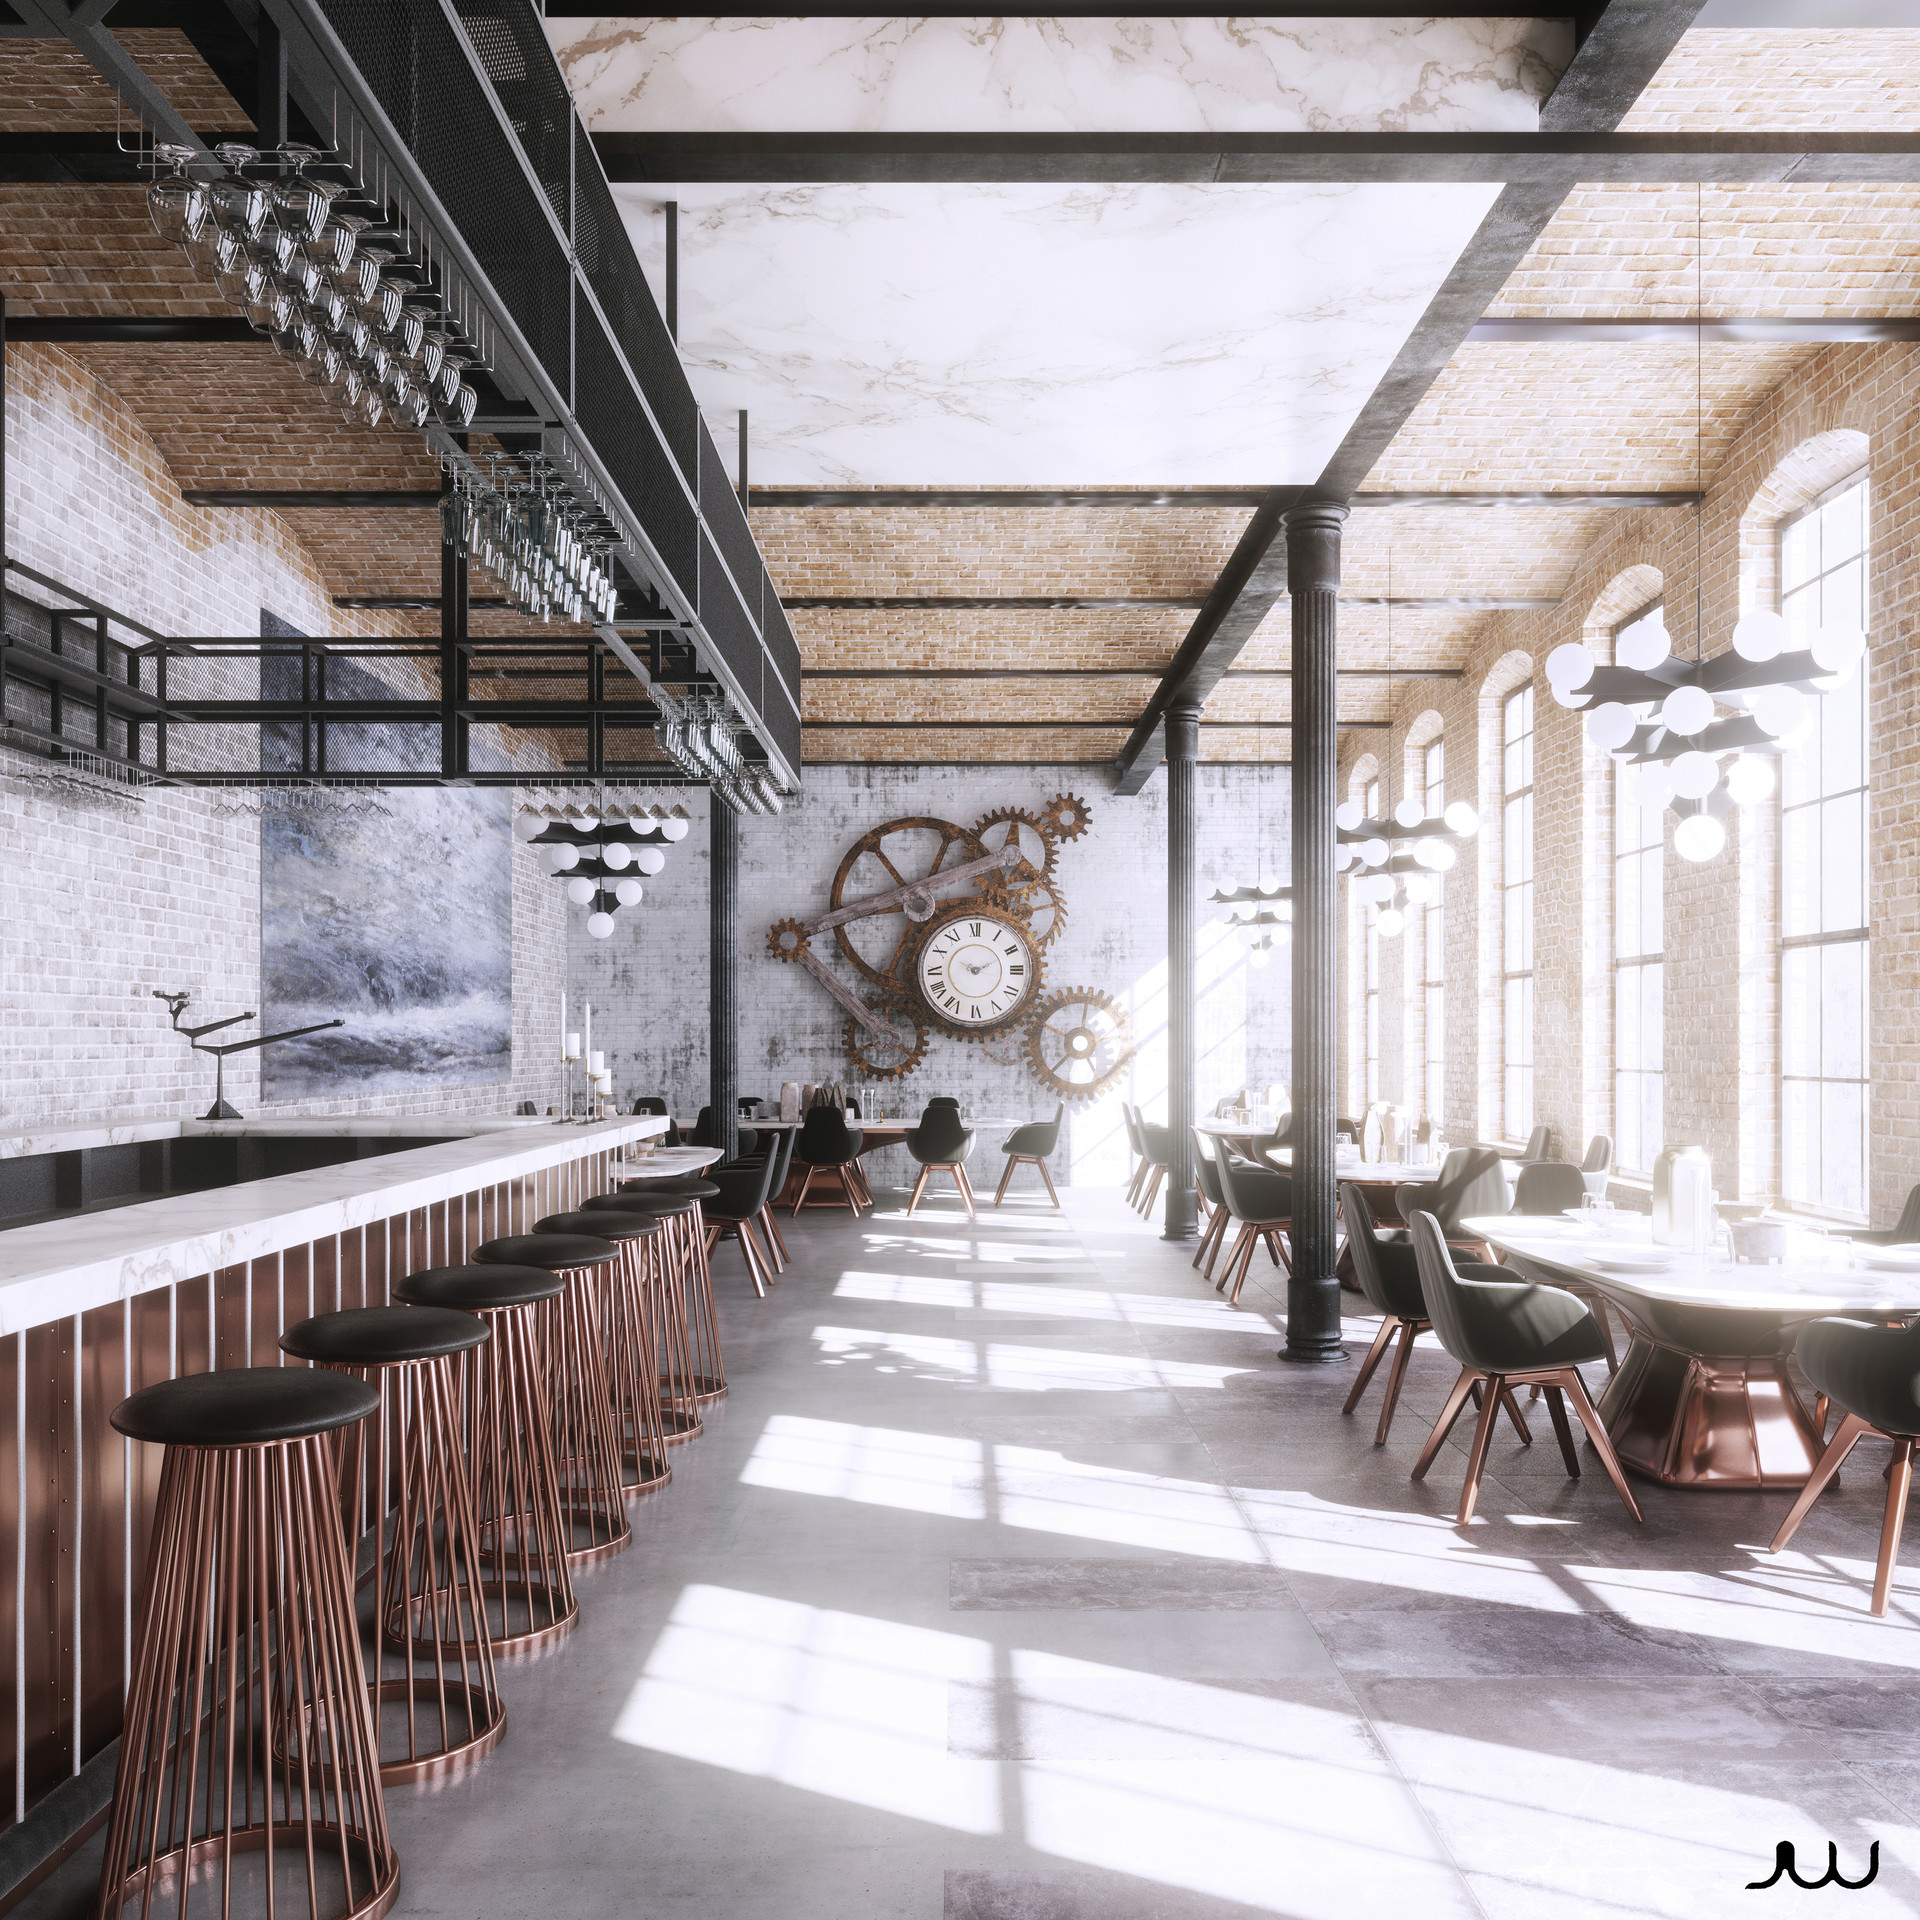 Javier Wainstein - Restaurant industrial style